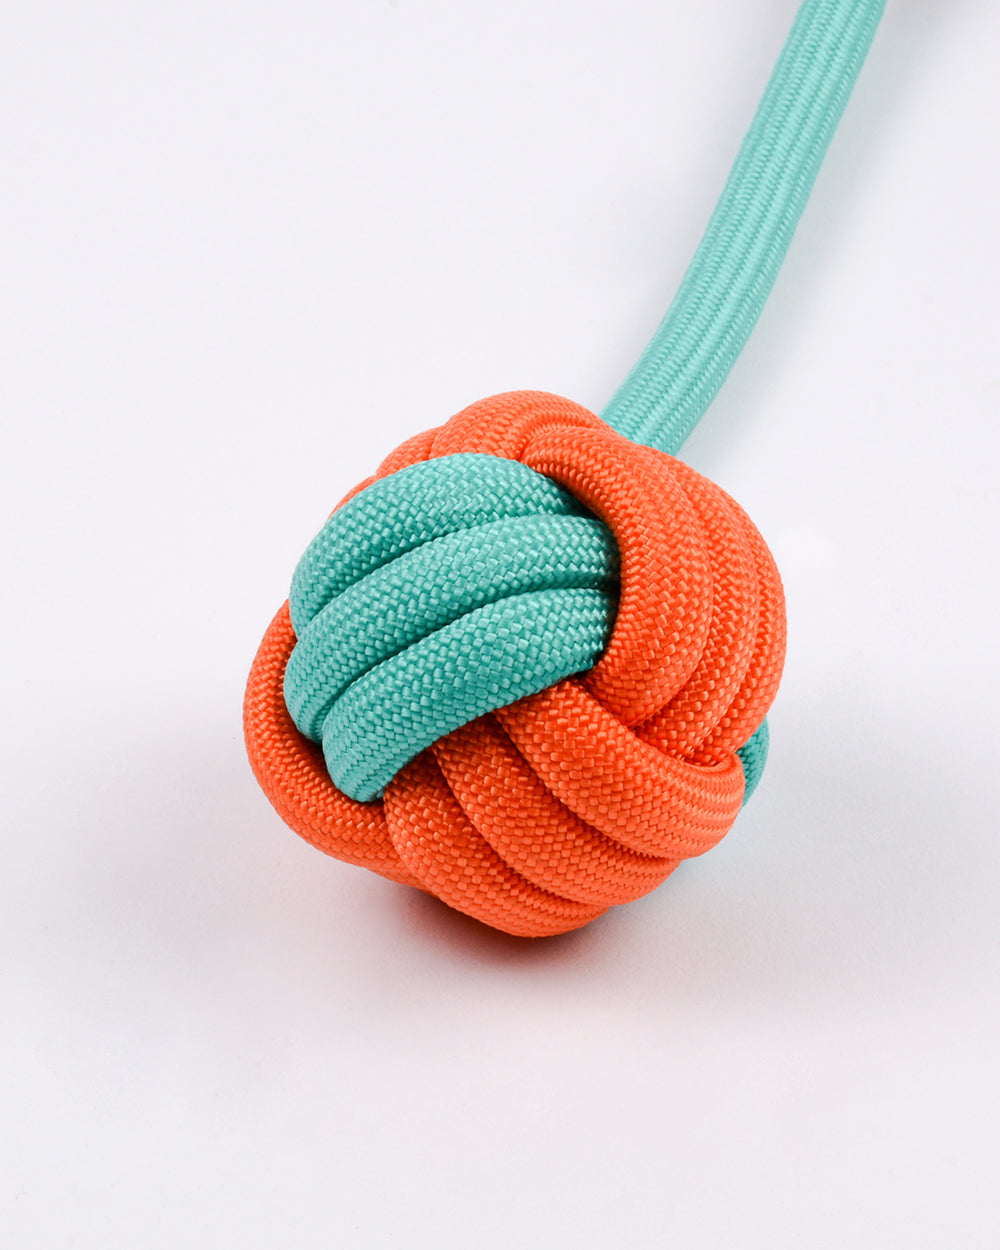 尼龍繩和球拖輪玩具帶環 - 橙綠色